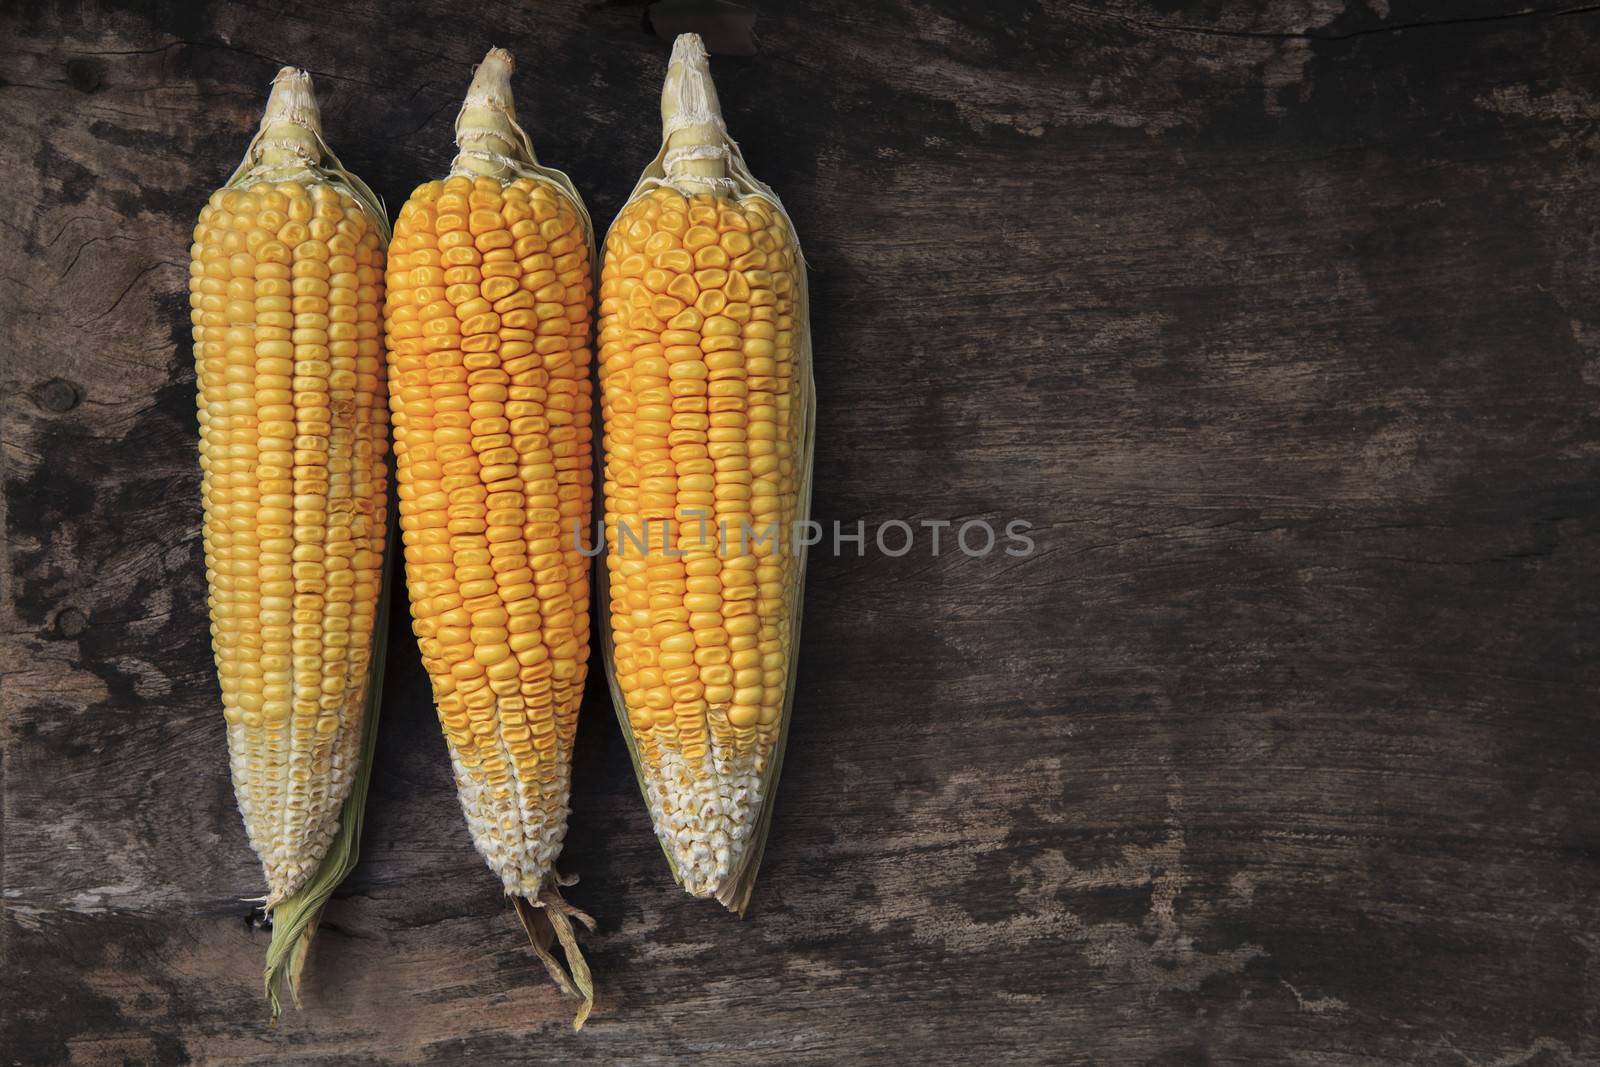 corn by khunaspix